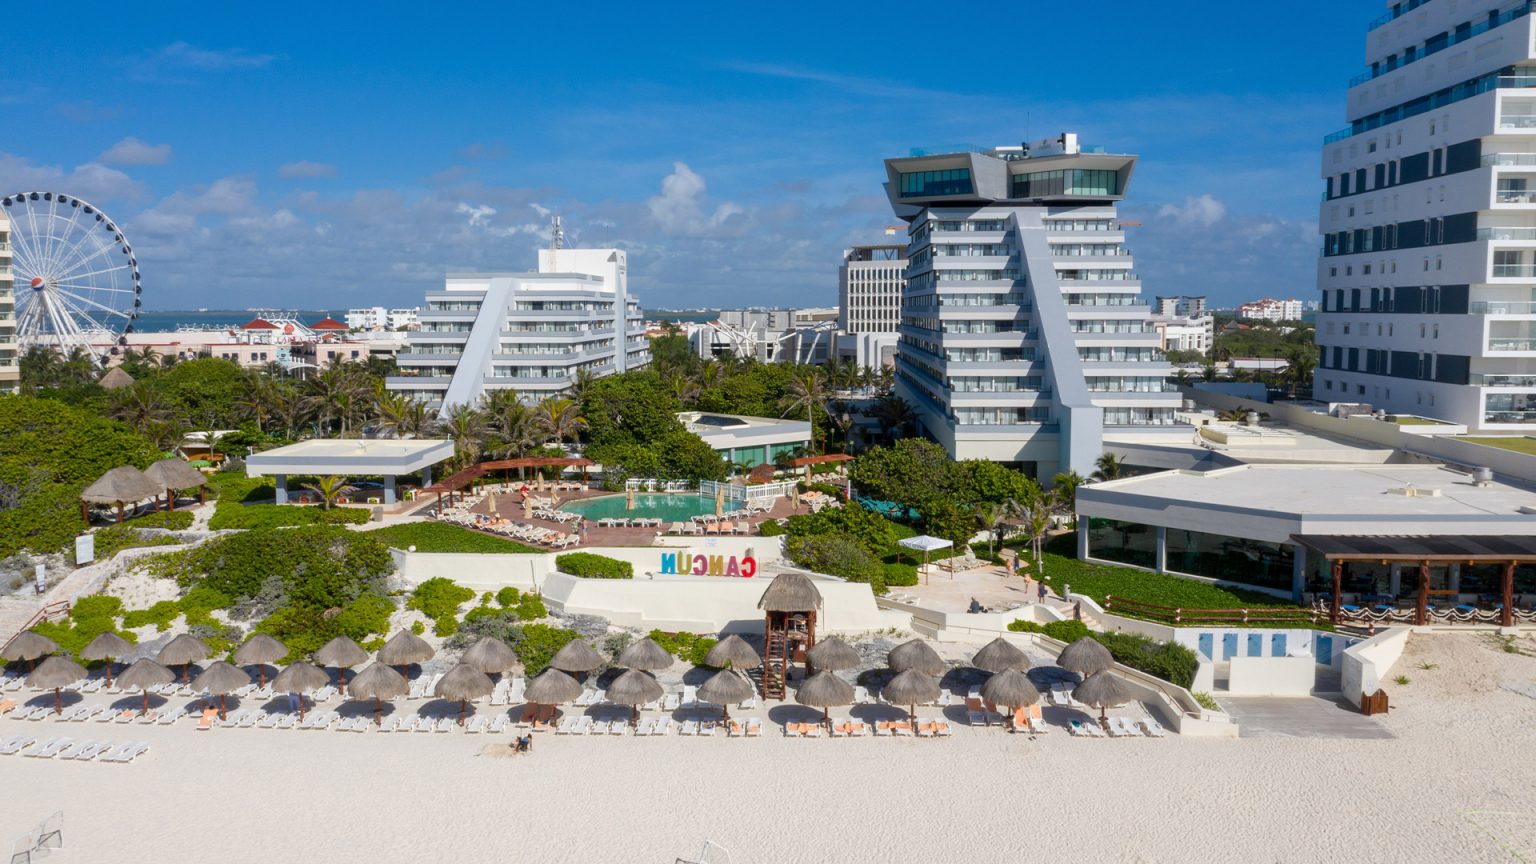 royal-holiday-resort-park-royal-cancun-mexico-vista-panoramica-1536x864